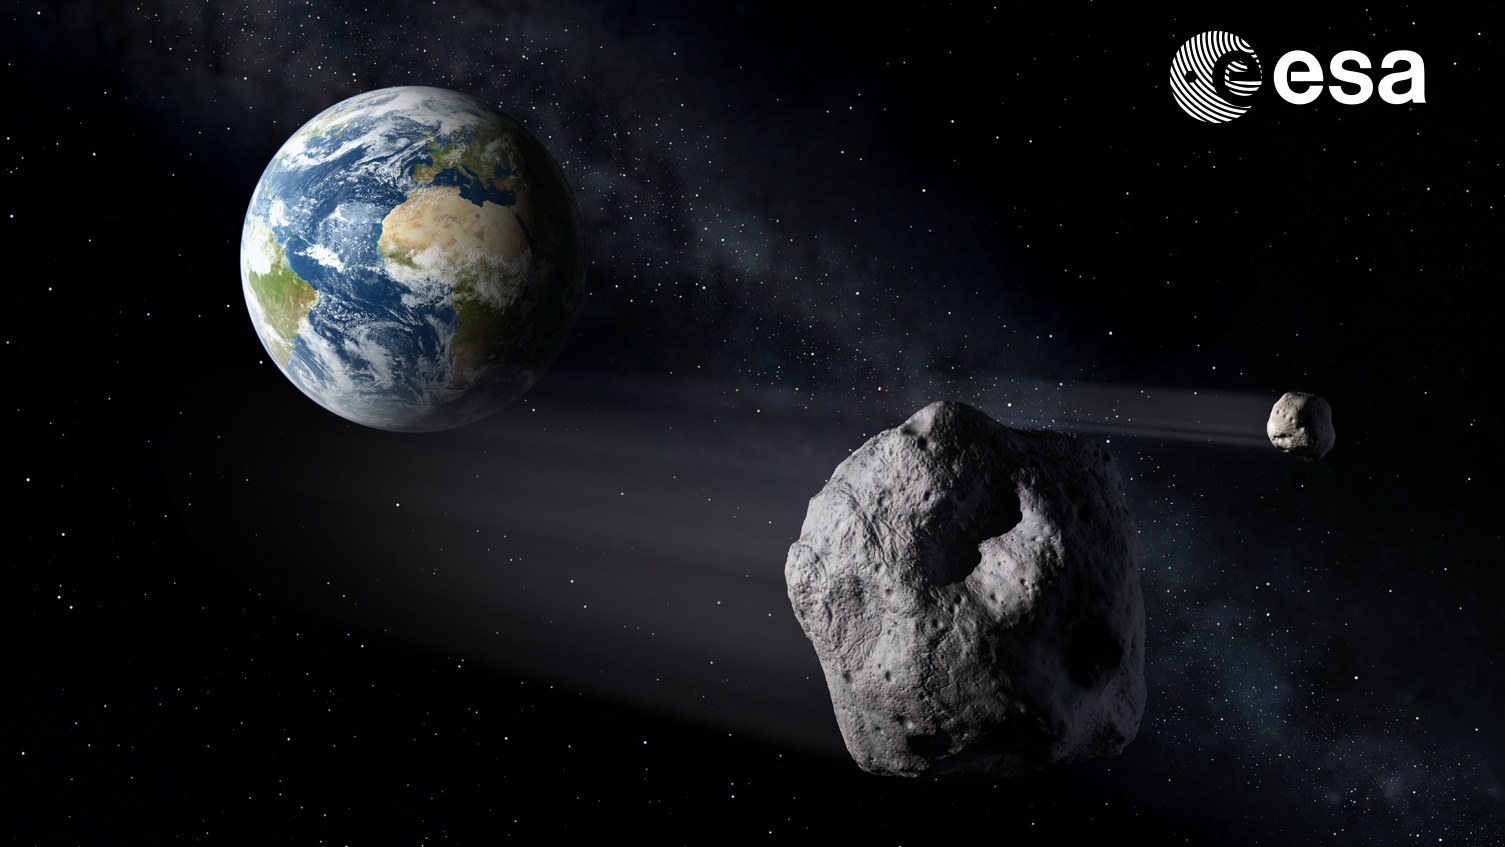 Asteroiden im Vorbeiflug an der Erde